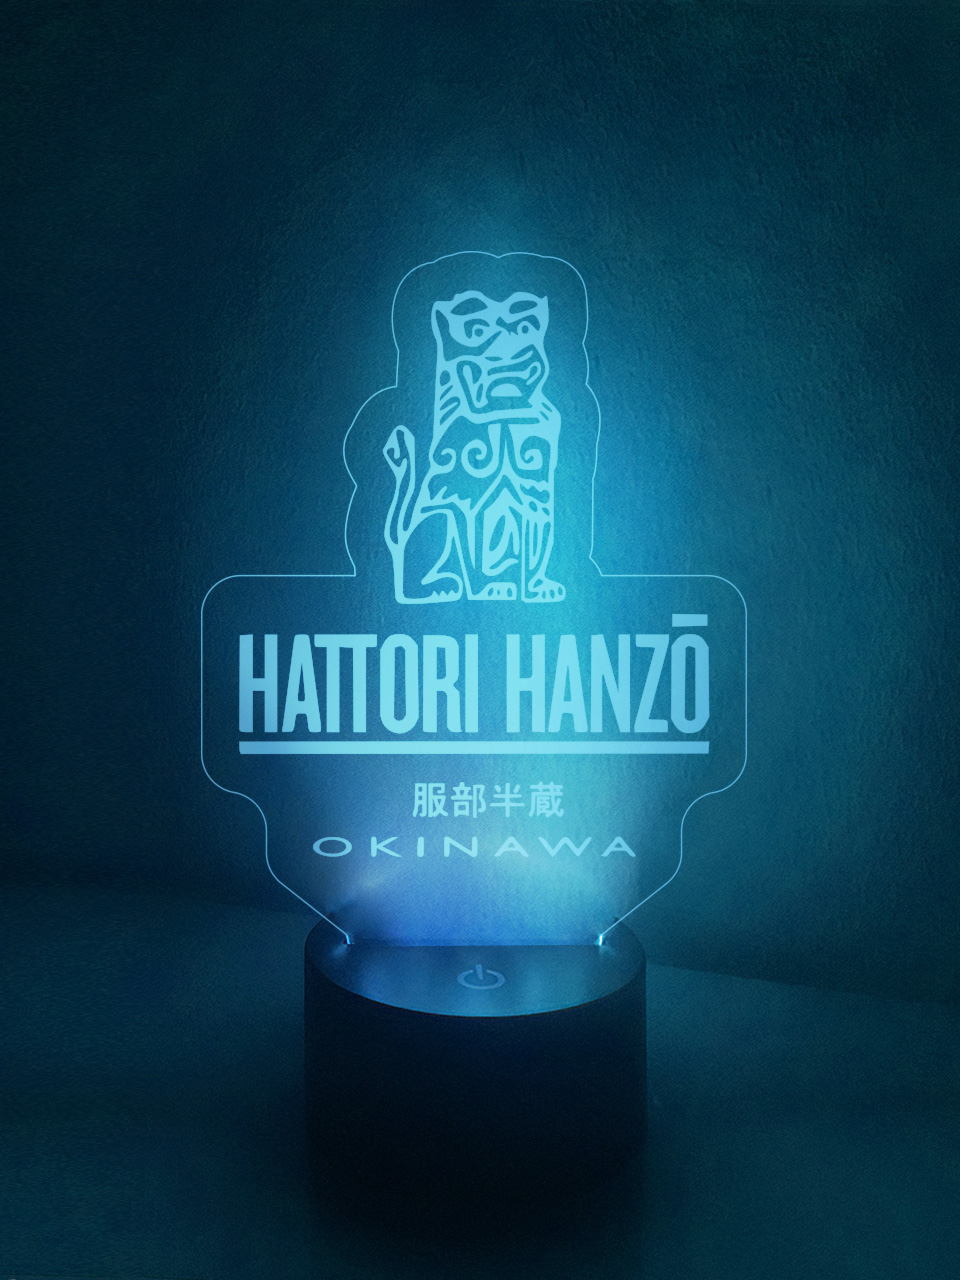 Hattori Hanzo Lamp